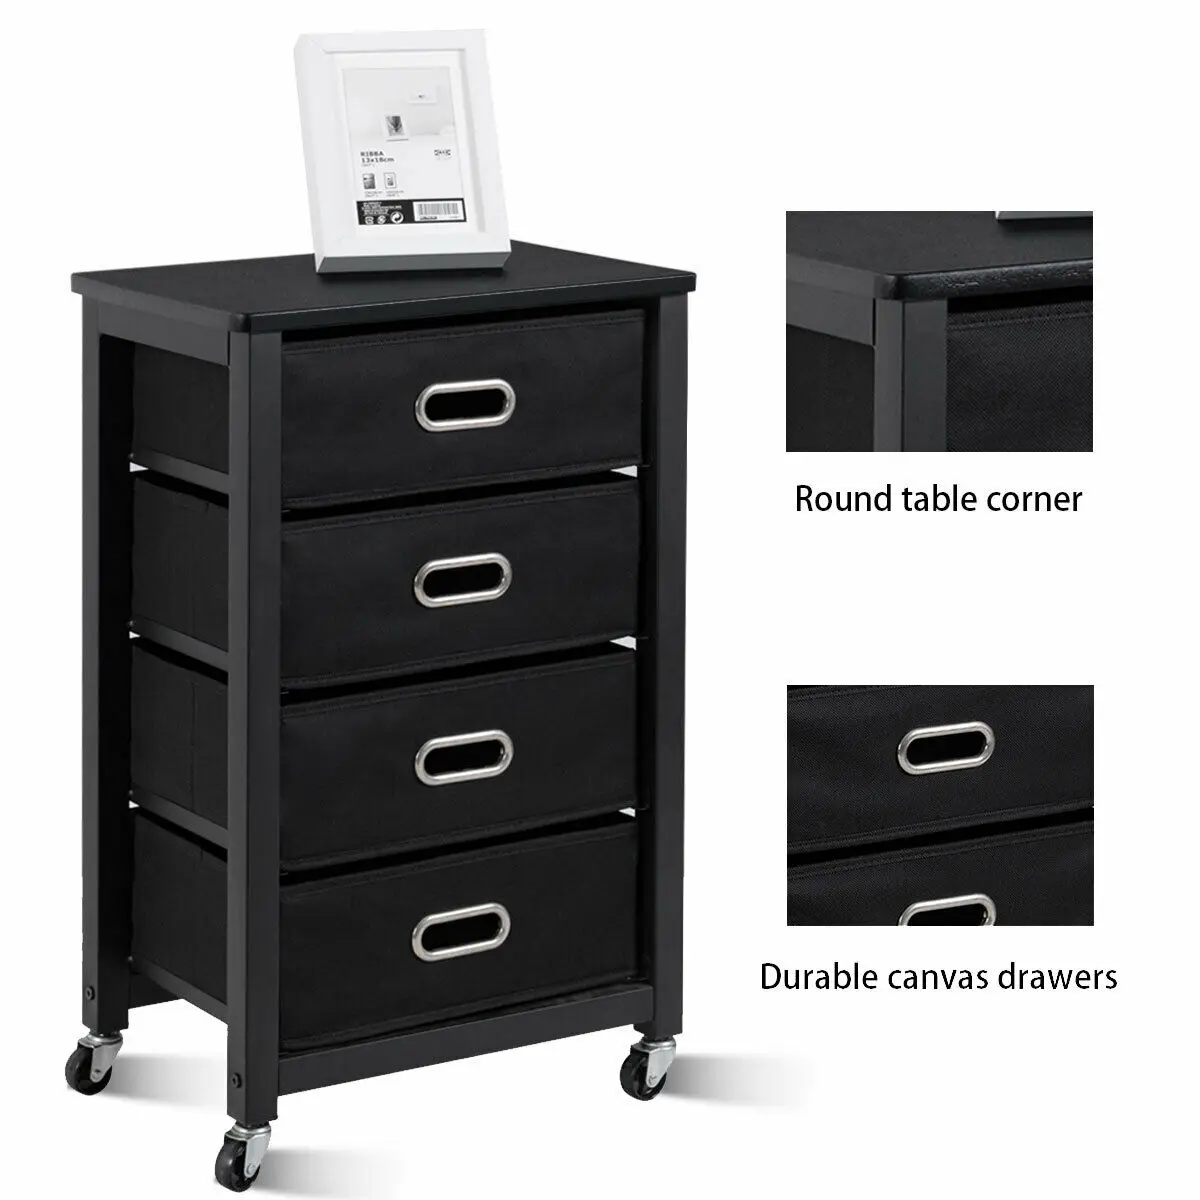 

Goantex Rolling File Cabinet Heavy Duty Mobile Storage Filing Cabinet w/ 4 Drawers HW54022